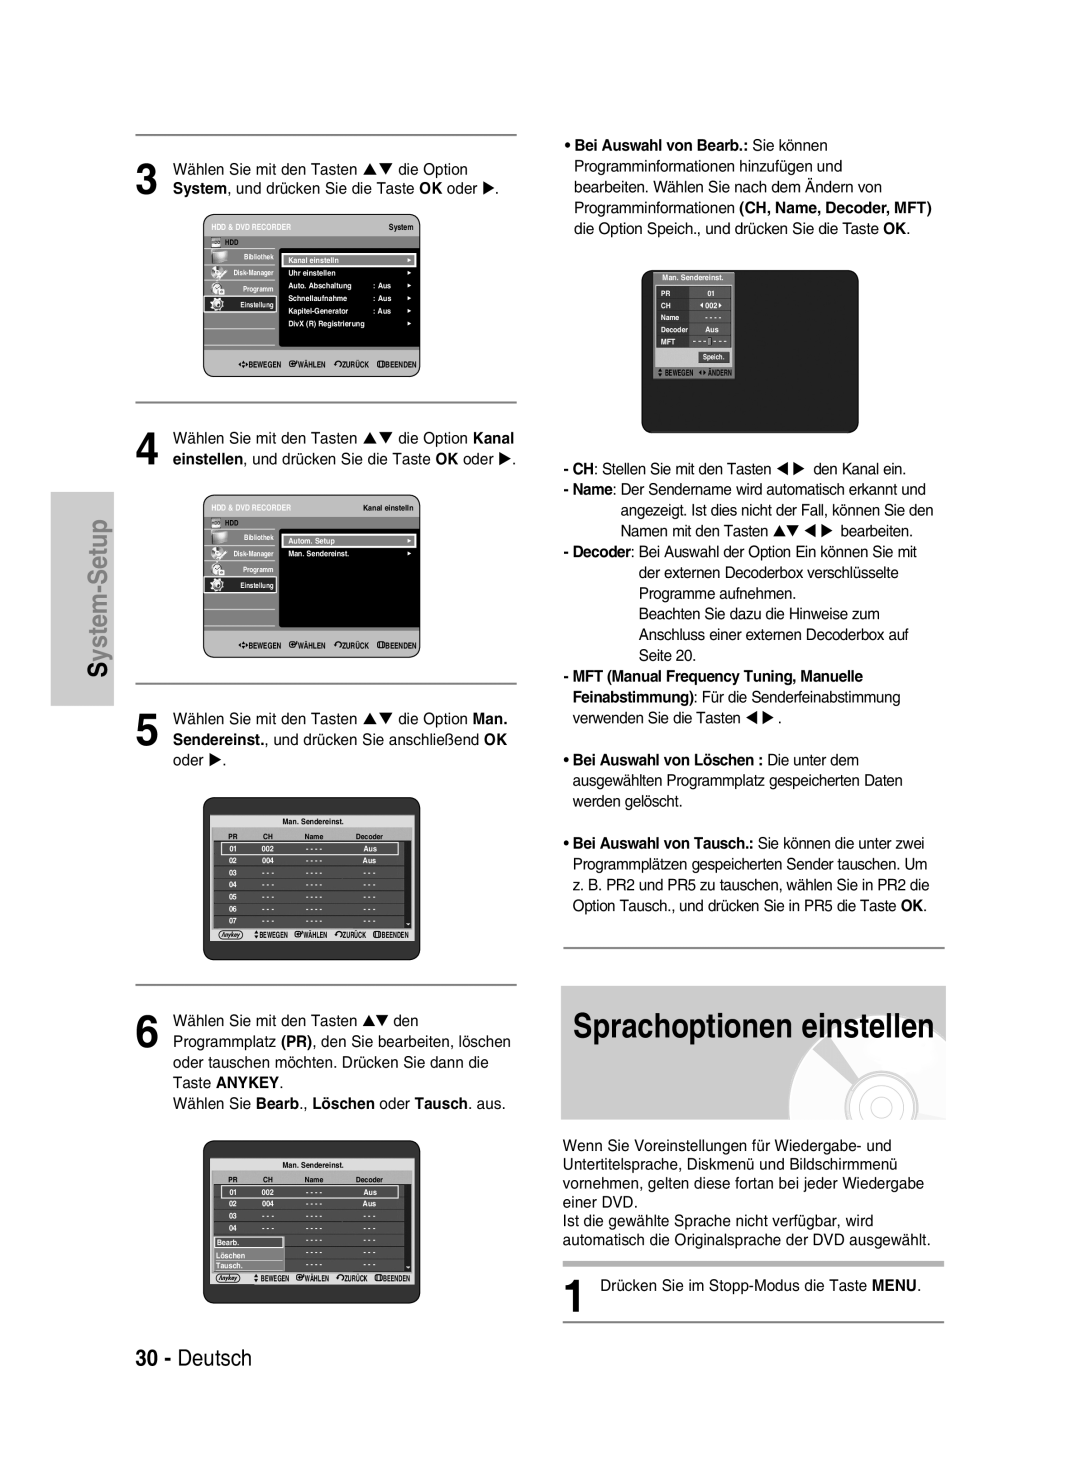 Samsung DVD-HR734/XEG, DVD-HR730/XEC manual Sprachoptionen einstellen, Deutsch, Setup, MFT Manual Frequency Tuning, Manuelle 